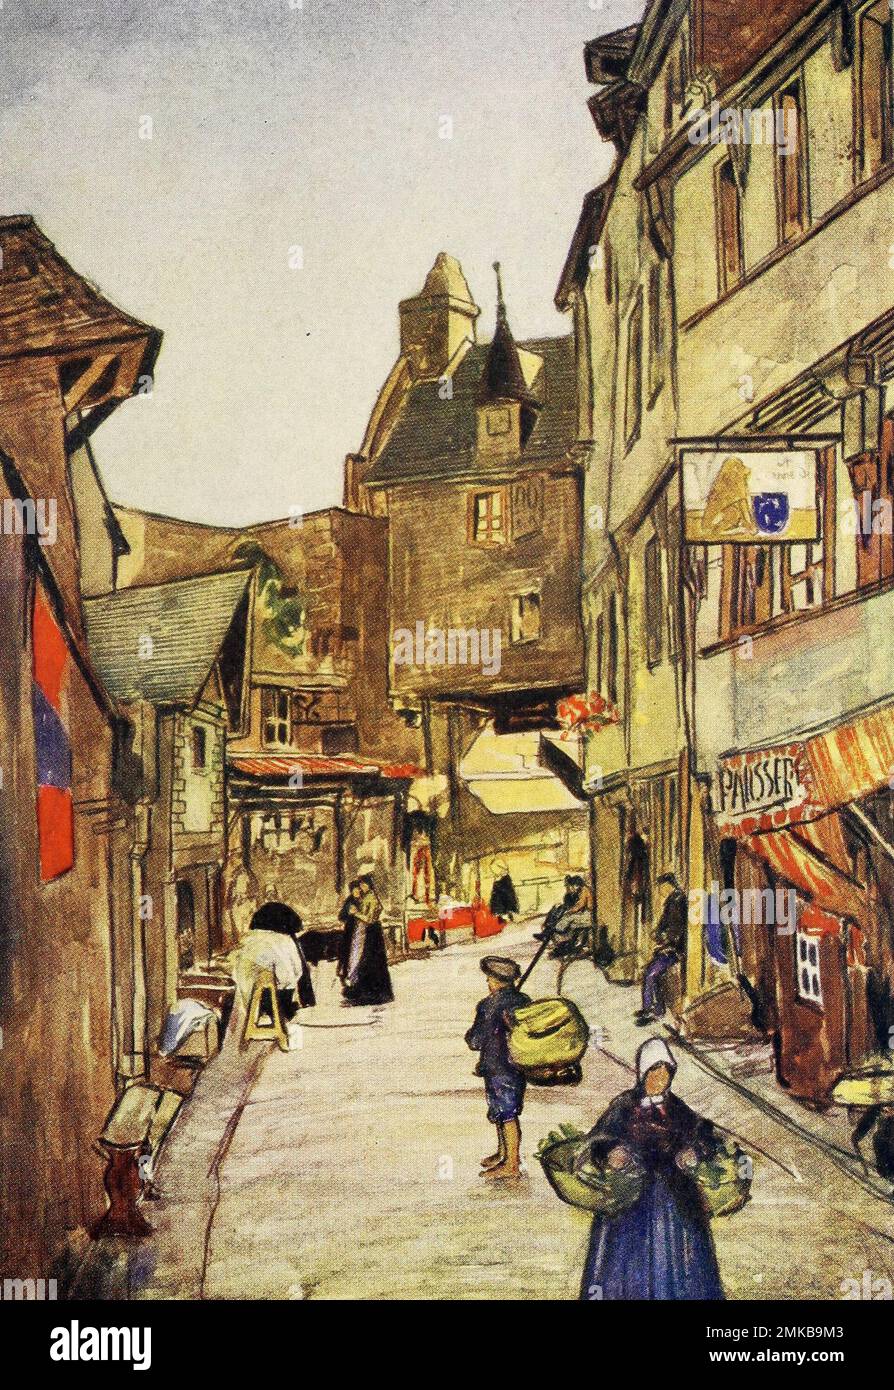 Rue a, Mont-Saint-Michel, Normandie, France, vers 1900 Banque D'Images